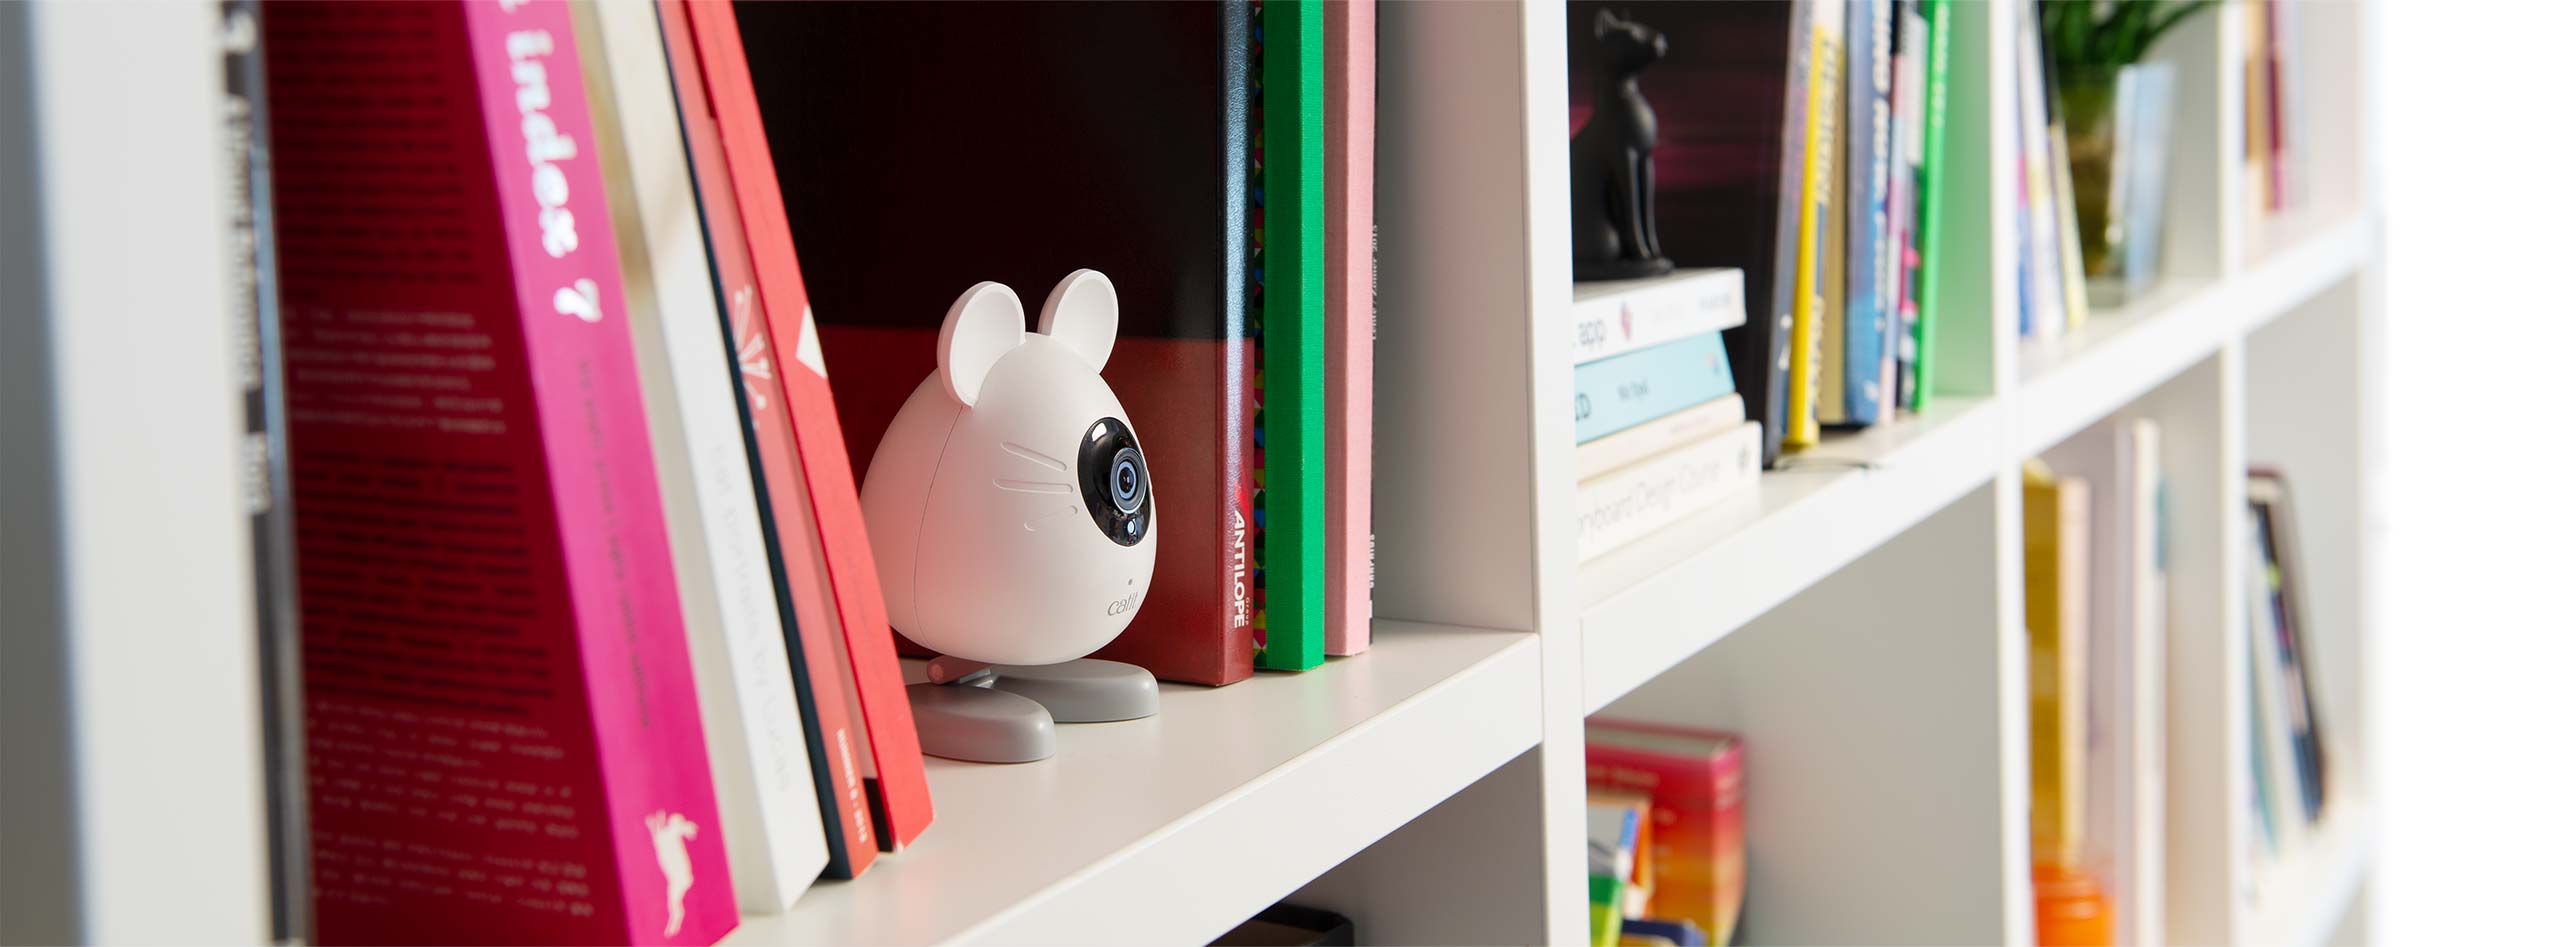 Kamera PIXI Smart w kształcie myszki na półce z książkami